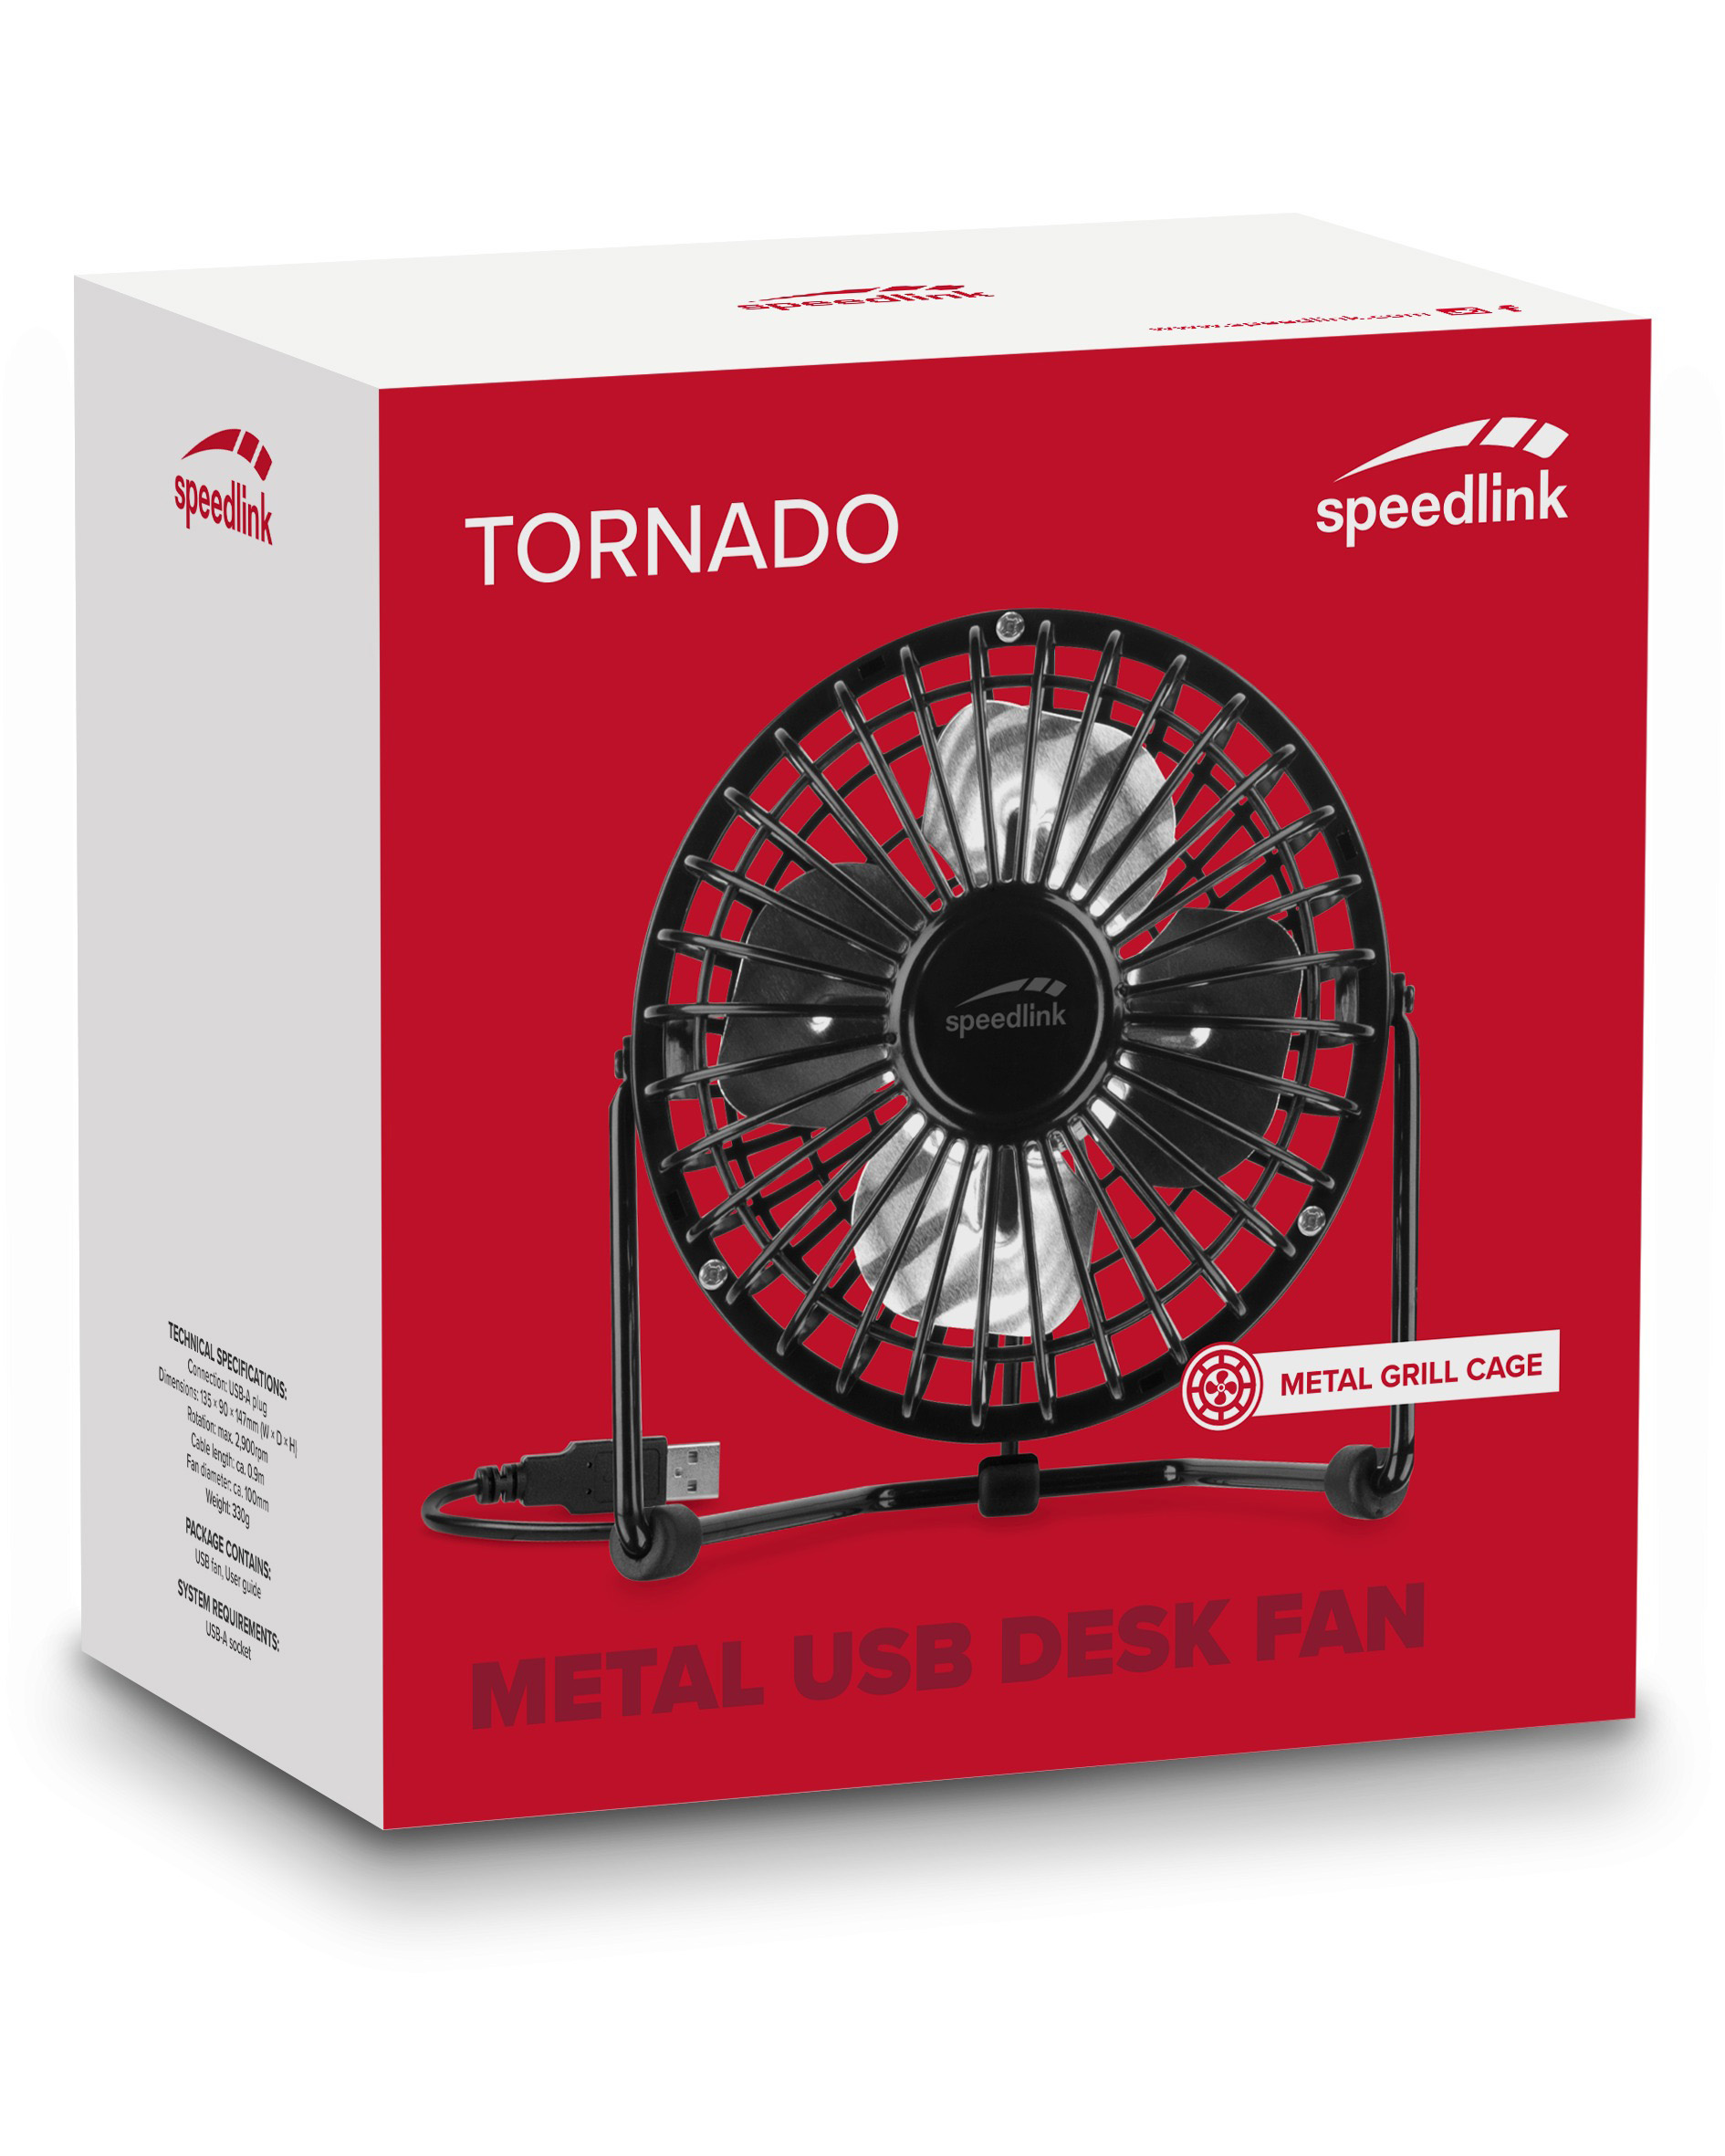 Fan, Tornado Schwarz USB Desk Metal SPEEDLINK